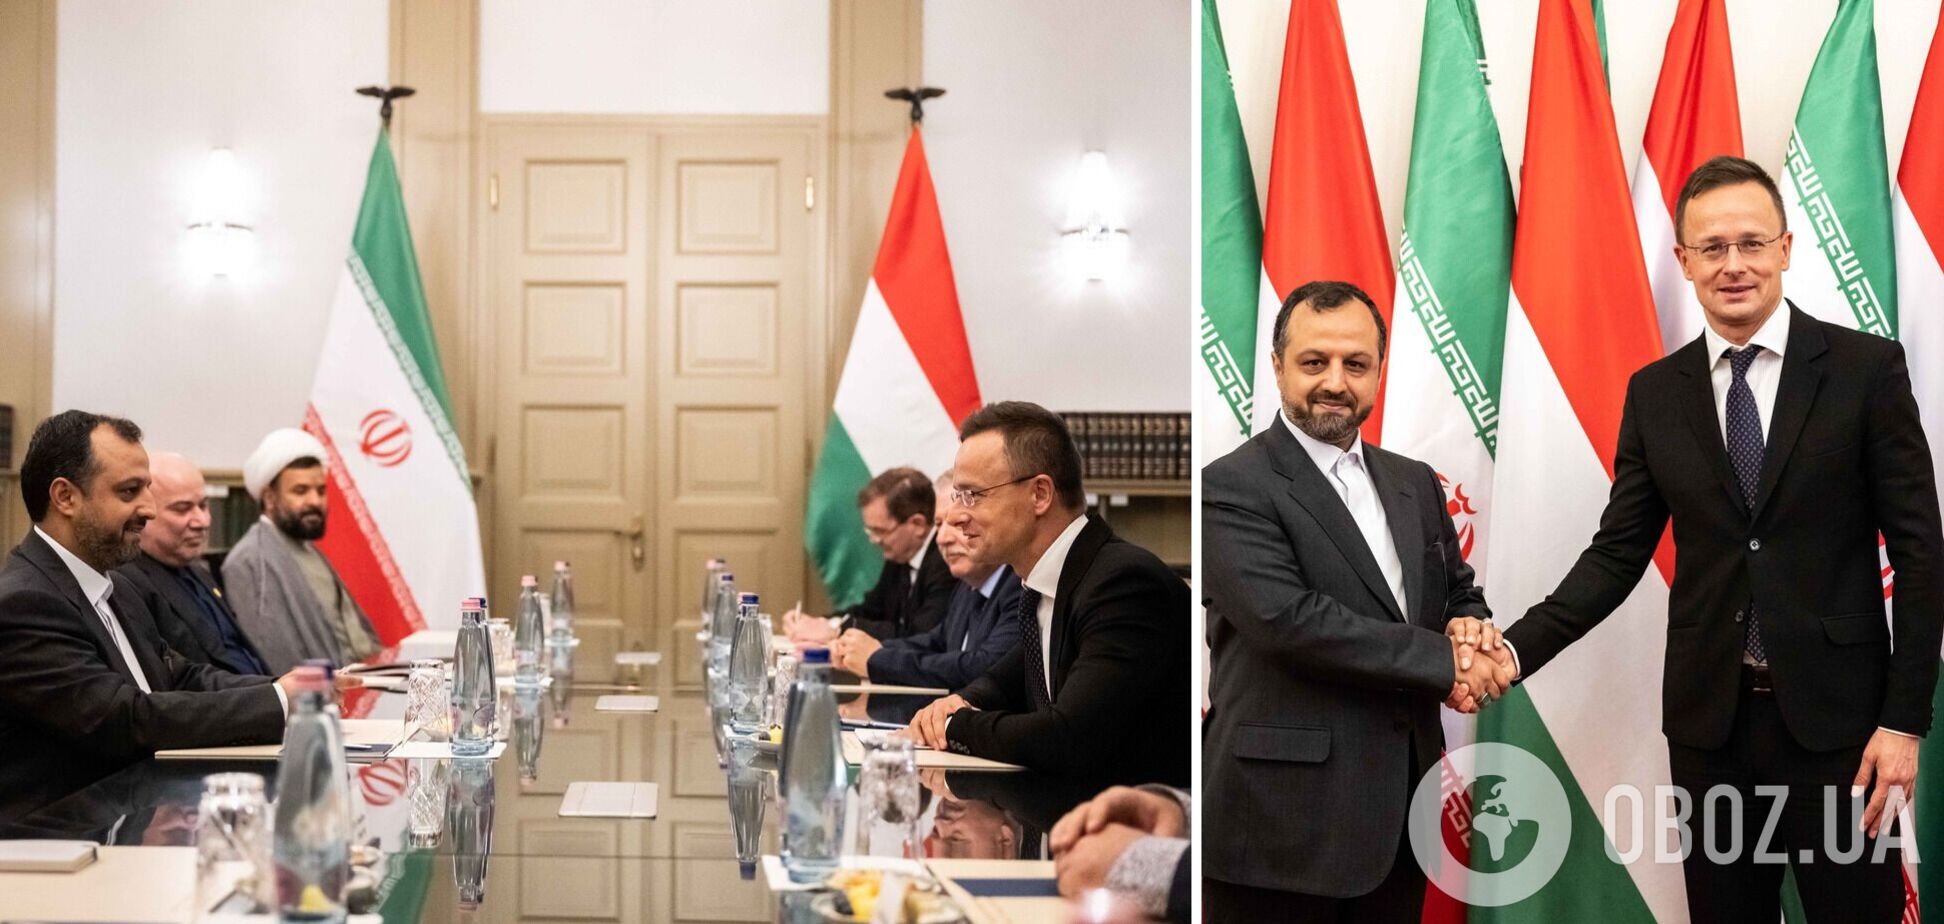 Угорщина офіційно оголосила про початок економічного співробітництва з Іраном 